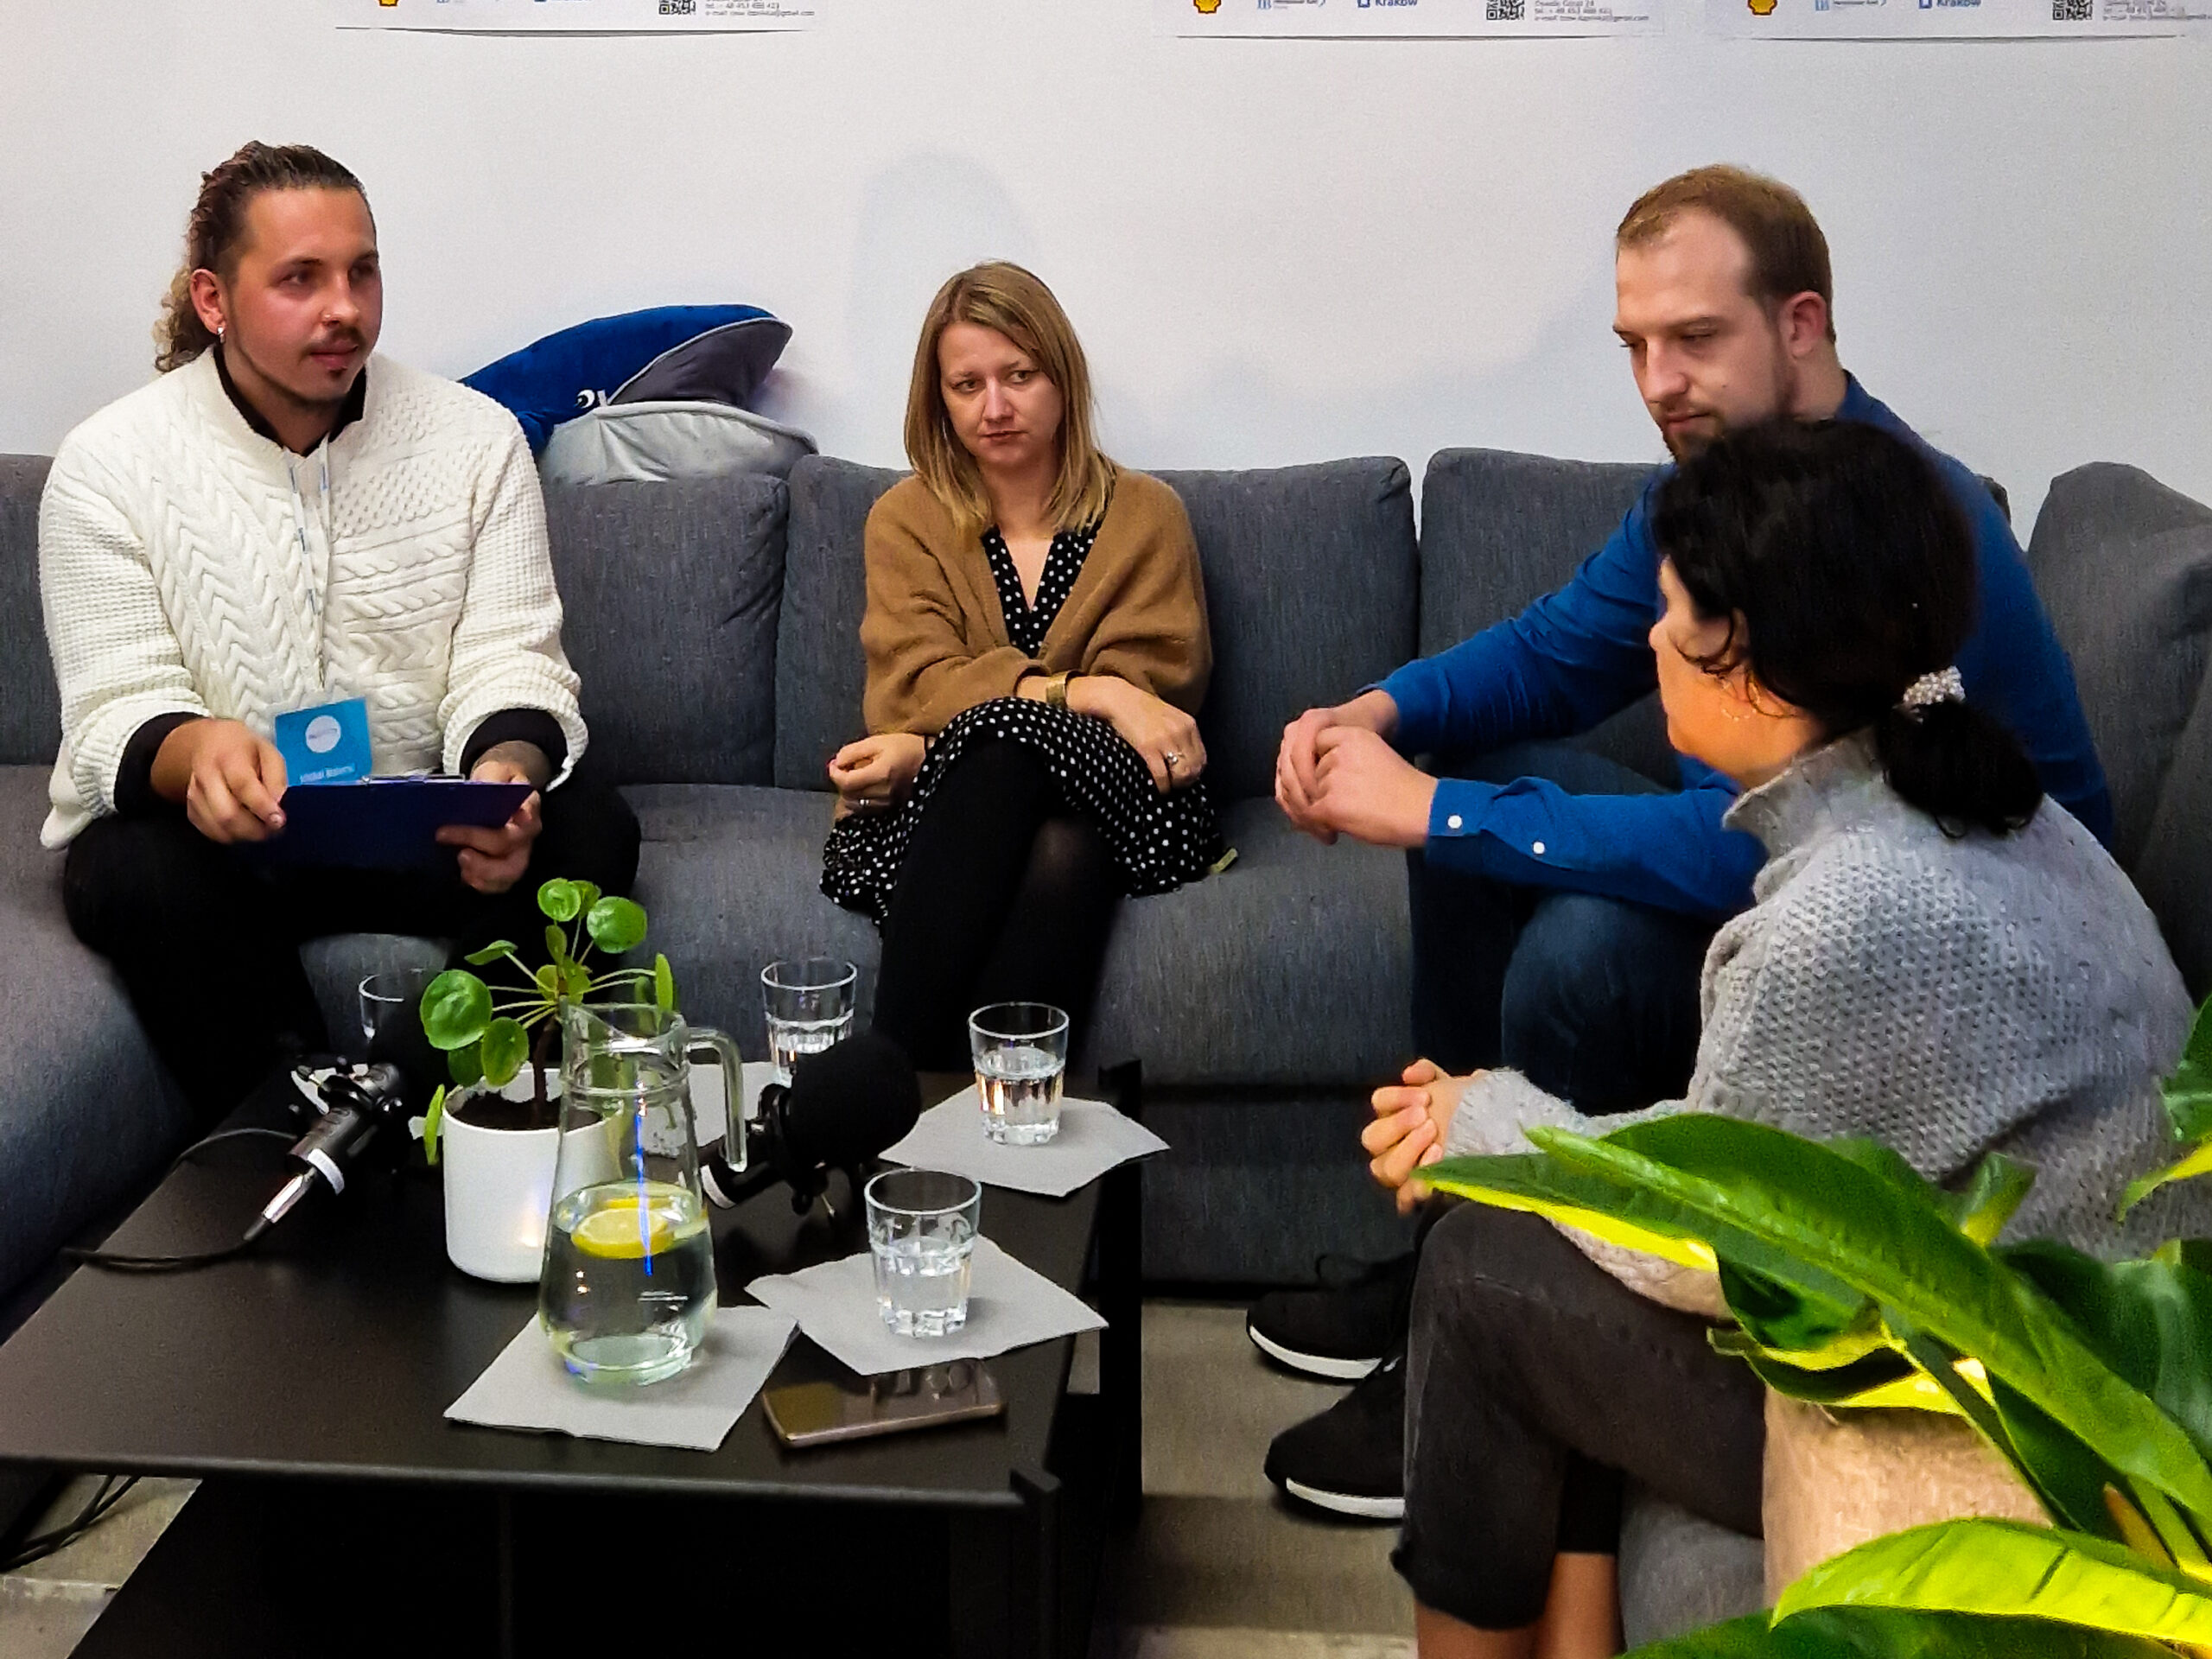 Na obrazku pracownicy Fundacji Internationaler Bund Polska podczas spotkania (od lewej Michał Małecki, Joanna Kołek Zych, Maciej Ostachowski.